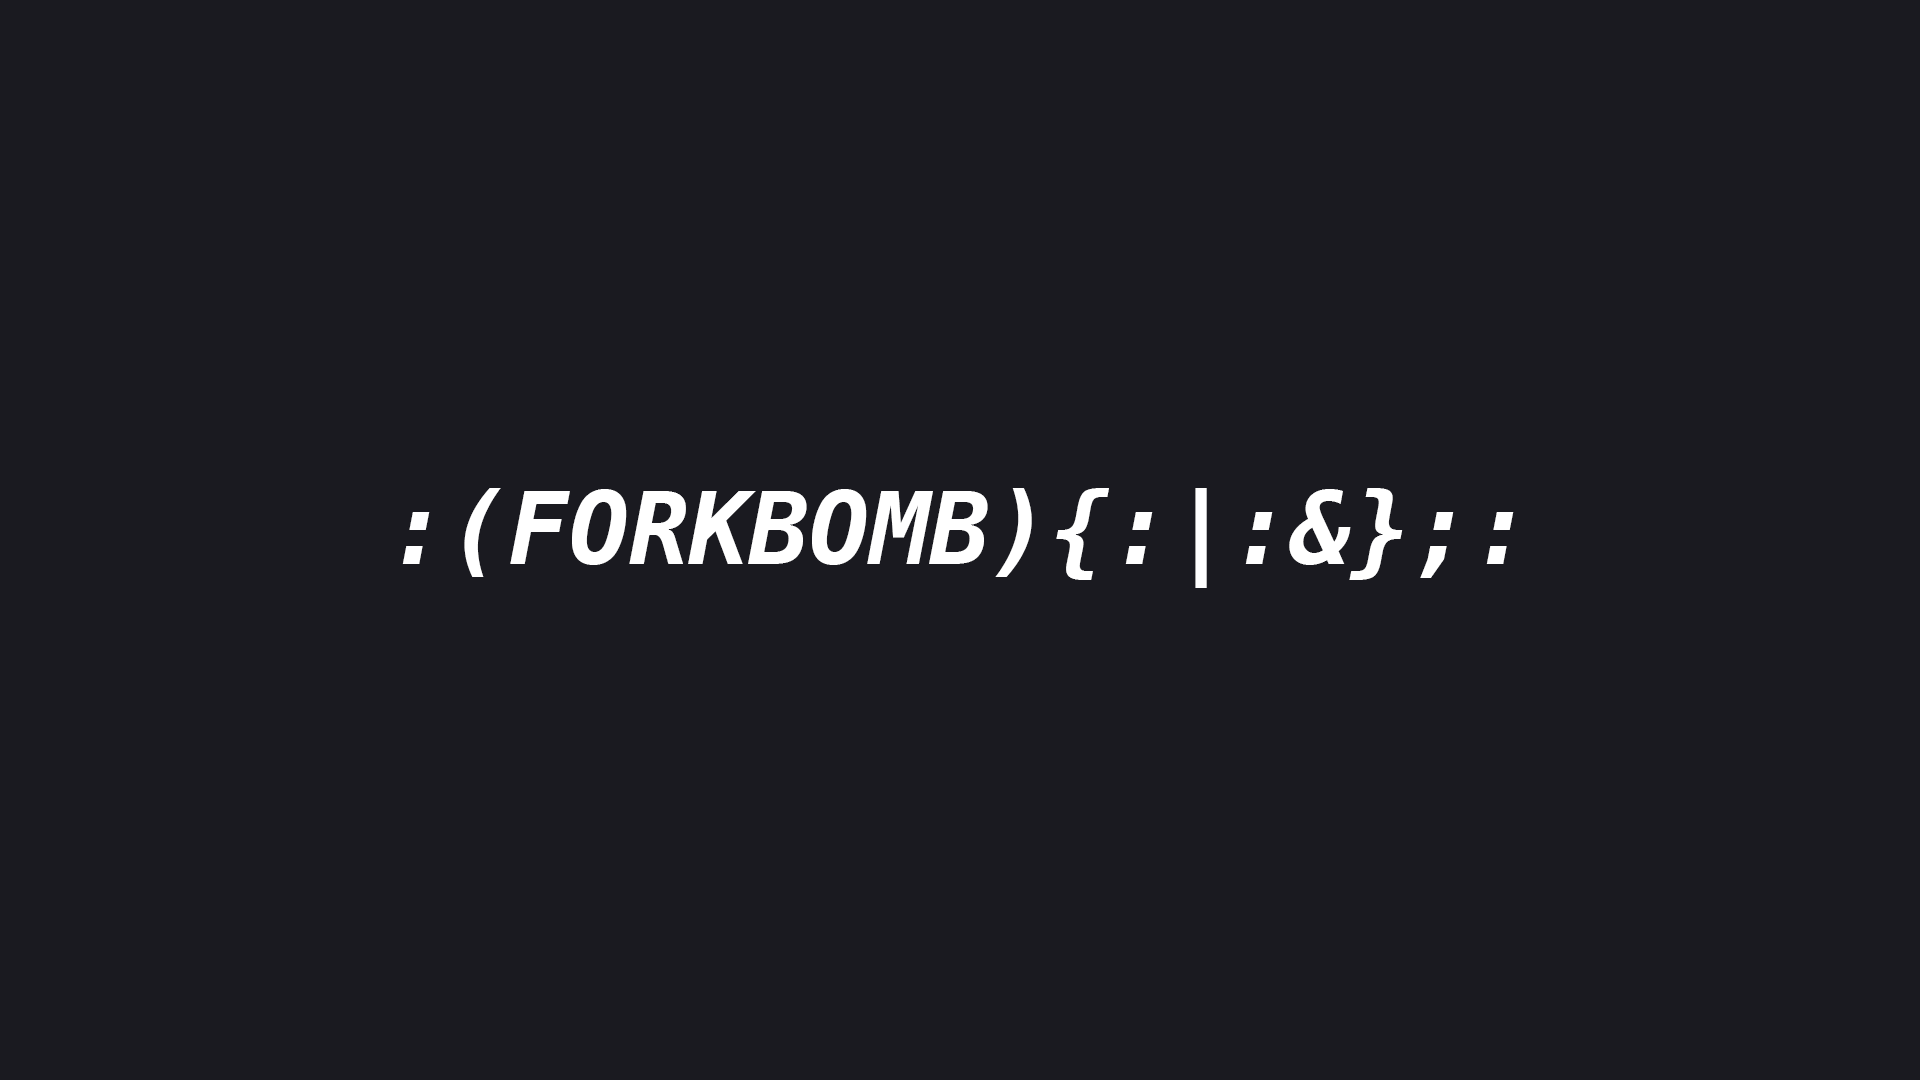 forkbomb hacknet